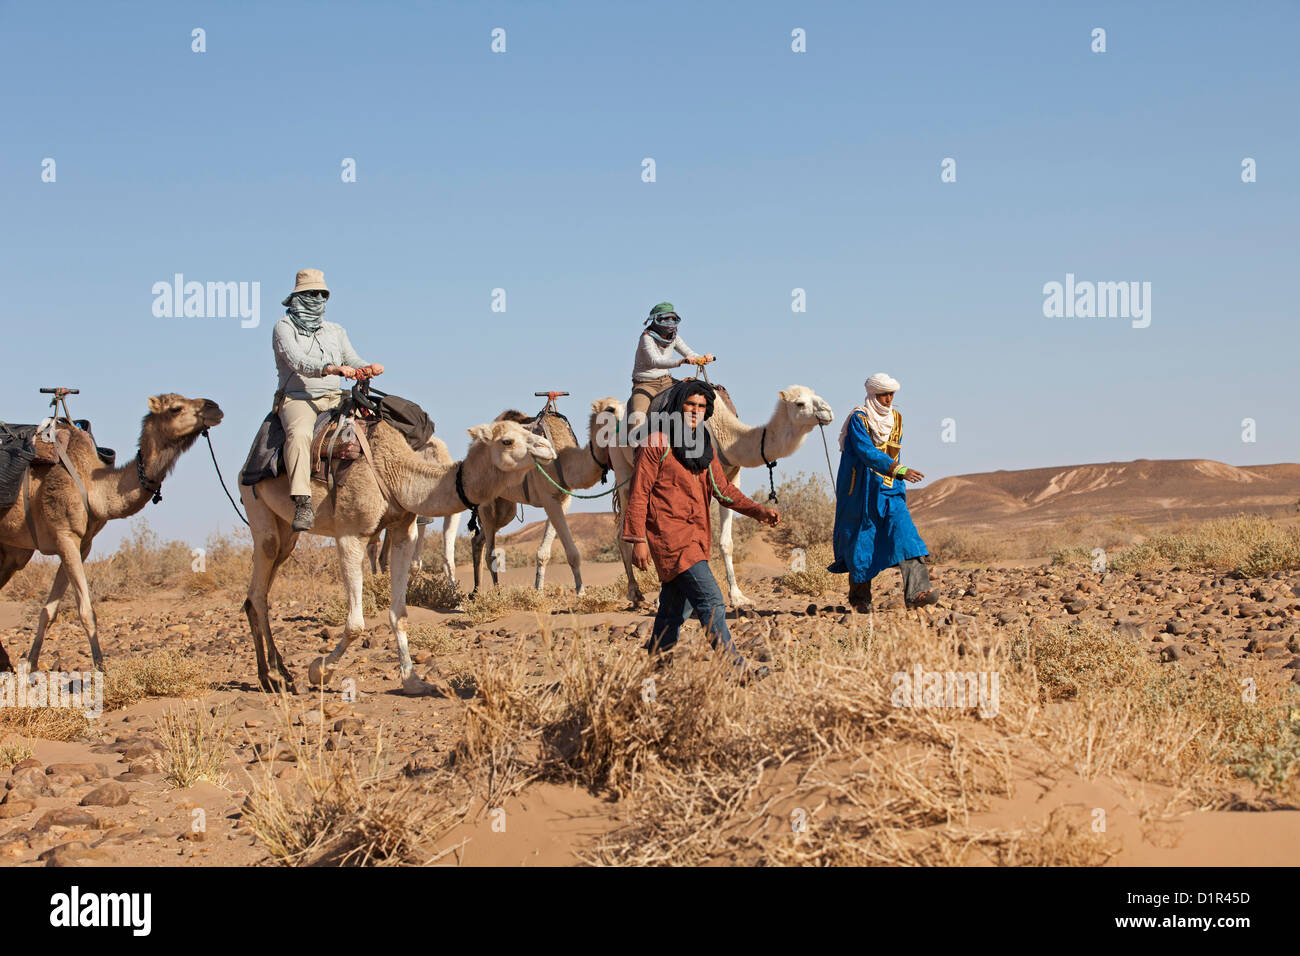 Il Marocco, M'Hamid, Erg Chigaga. Deserto del Sahara. Camel-driver, camel caravan e turisti rendendo sette giorni di tour attraverso il deserto. Foto Stock